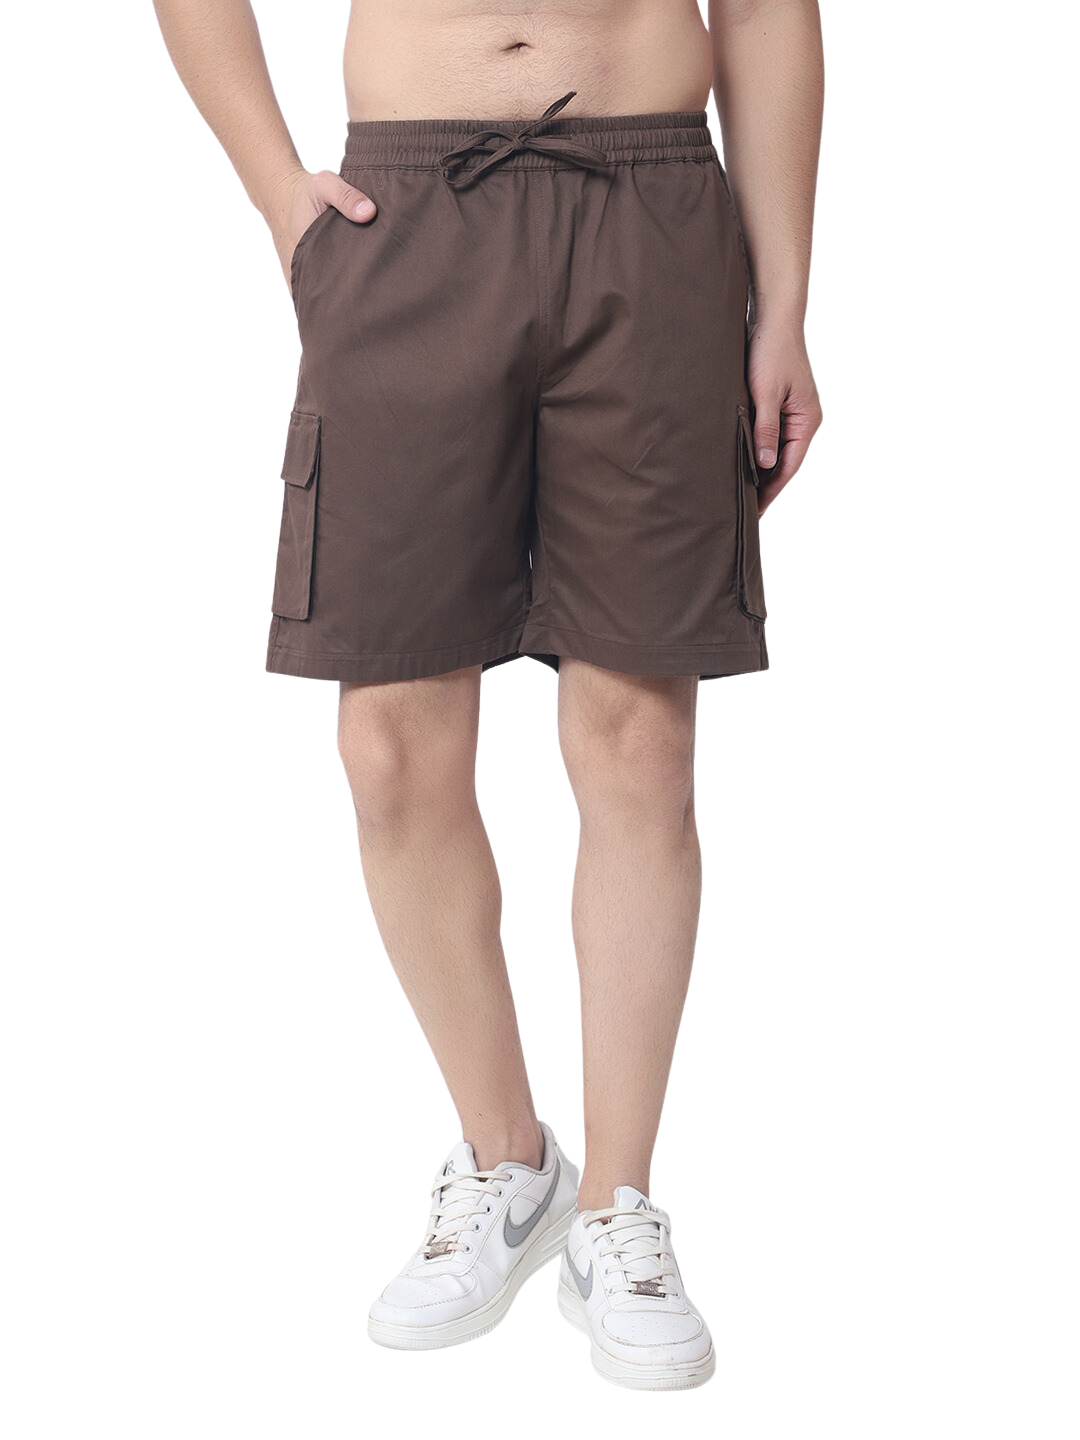 Cotton Cargo Shorts (Brown) - Wearduds